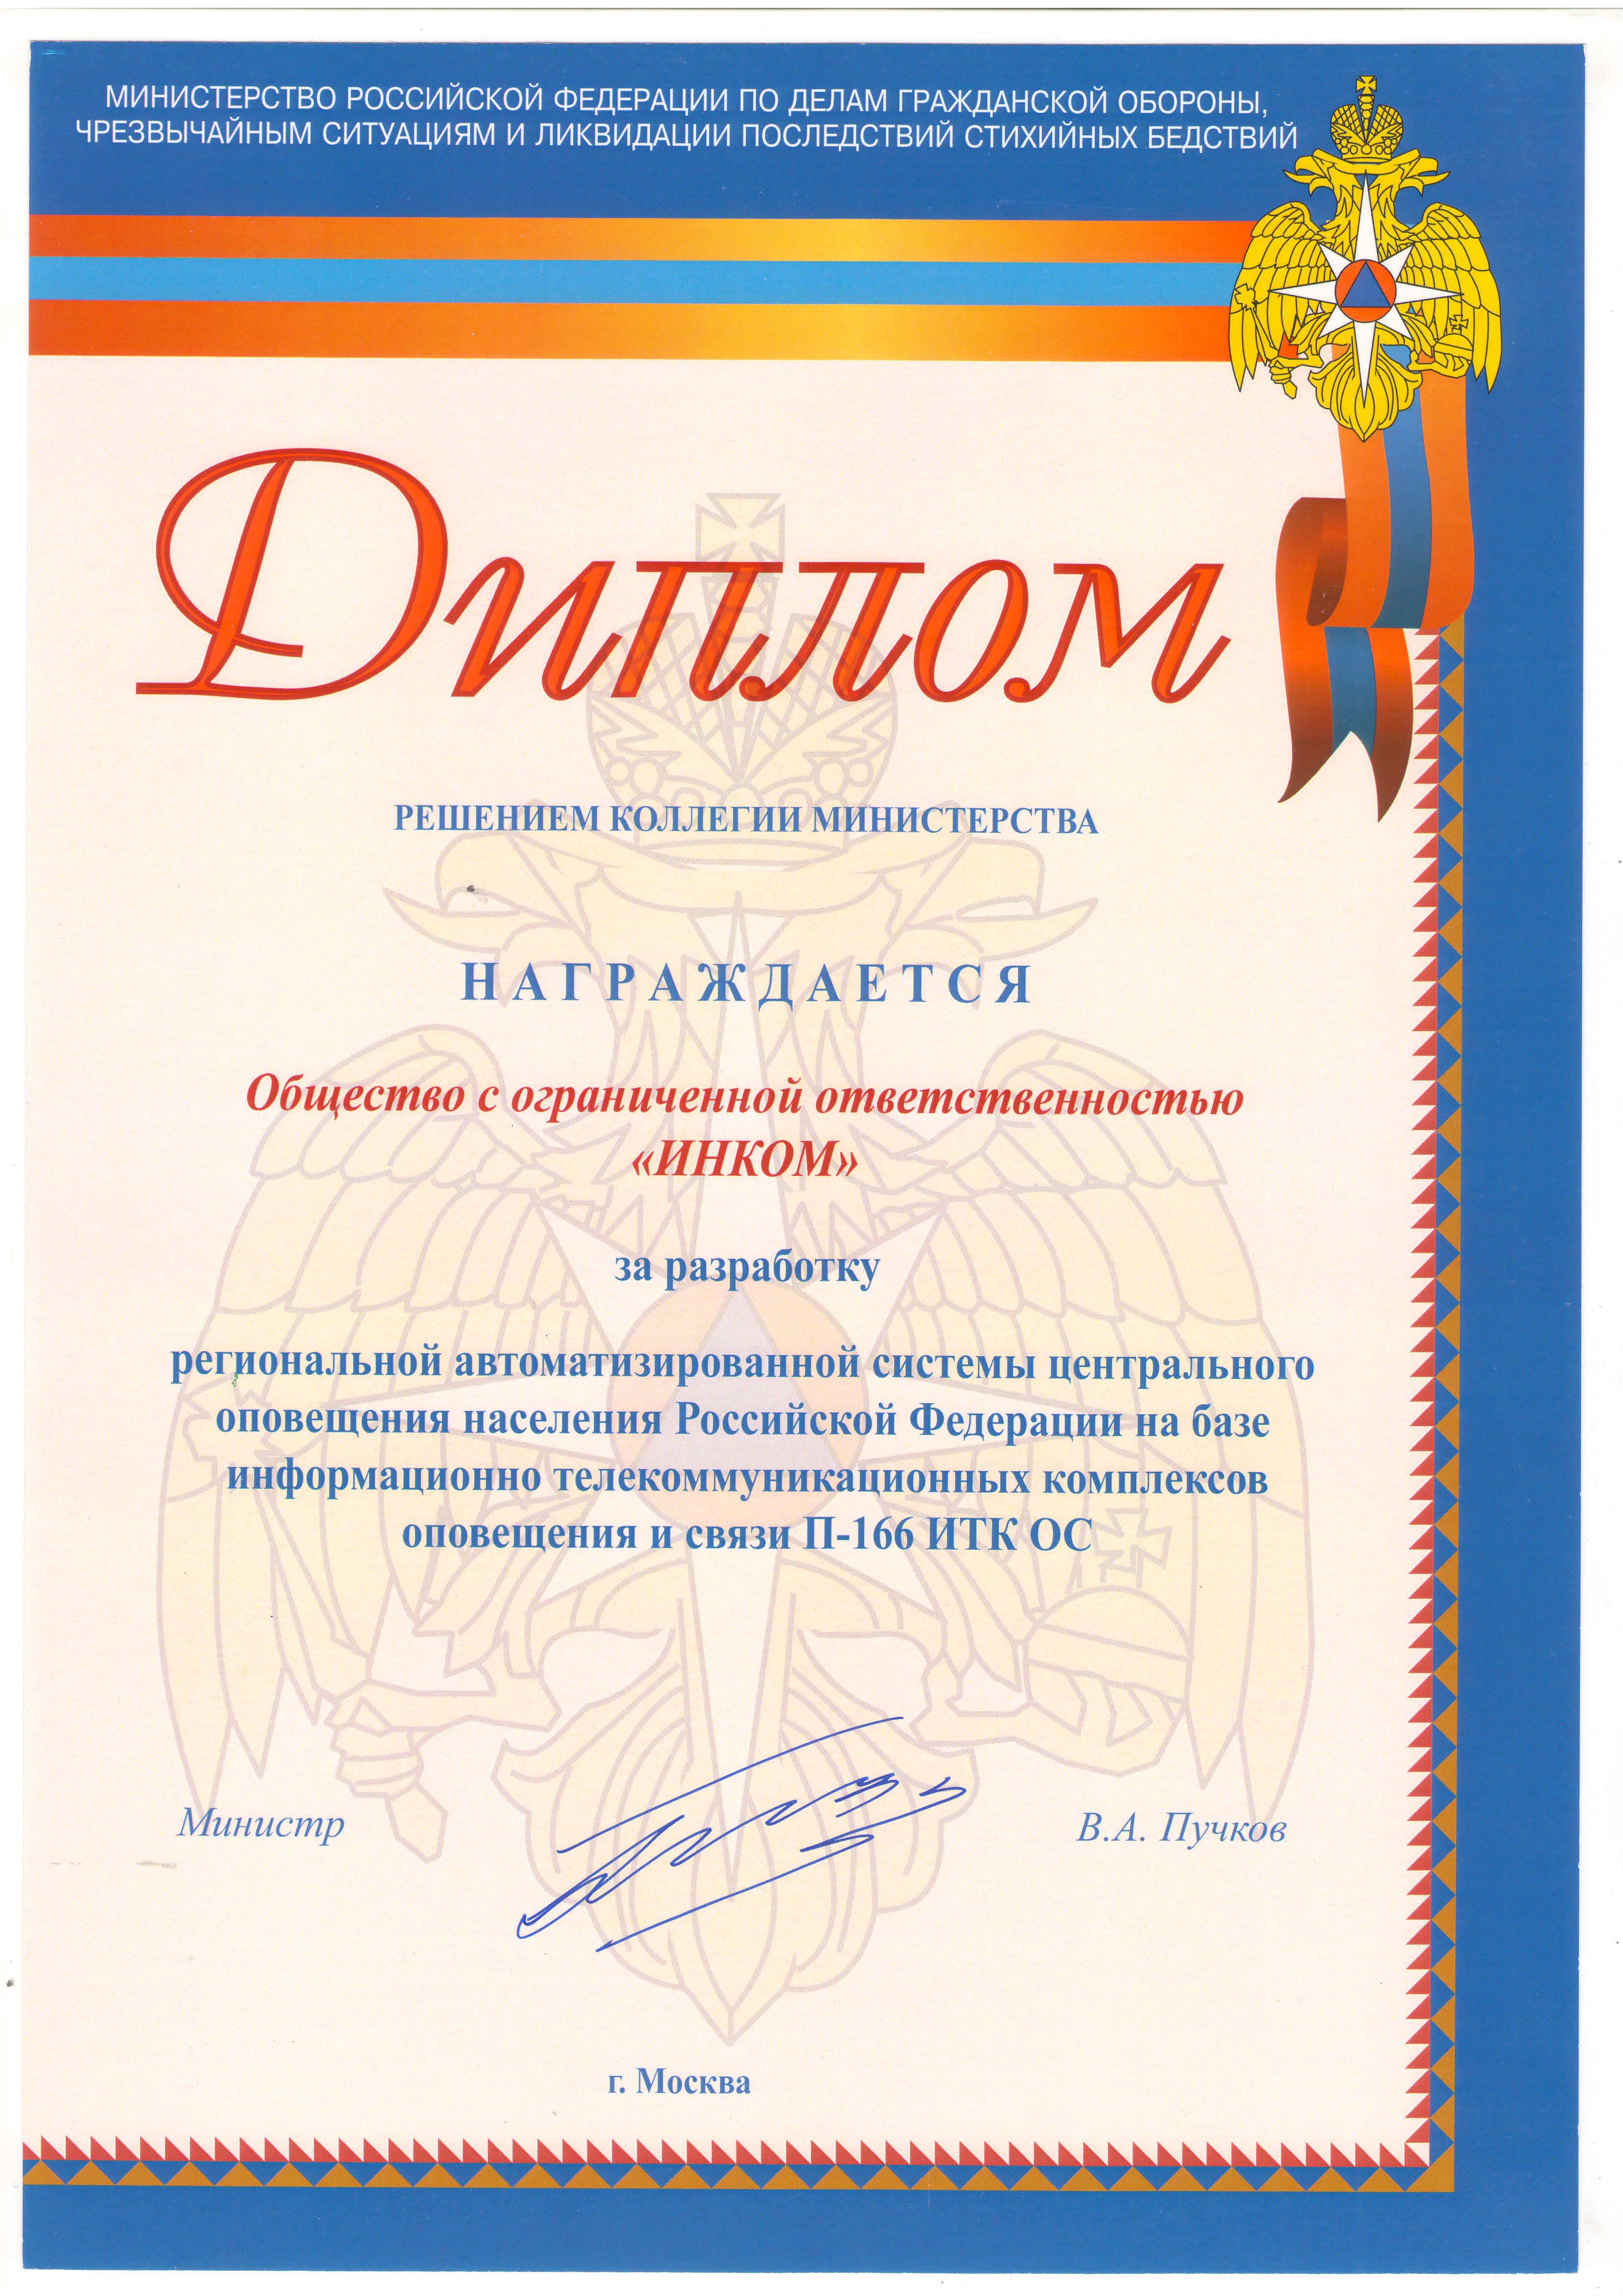 Диплом МЧС РФ за региональную автоматизированную систему централизованного оповещения 